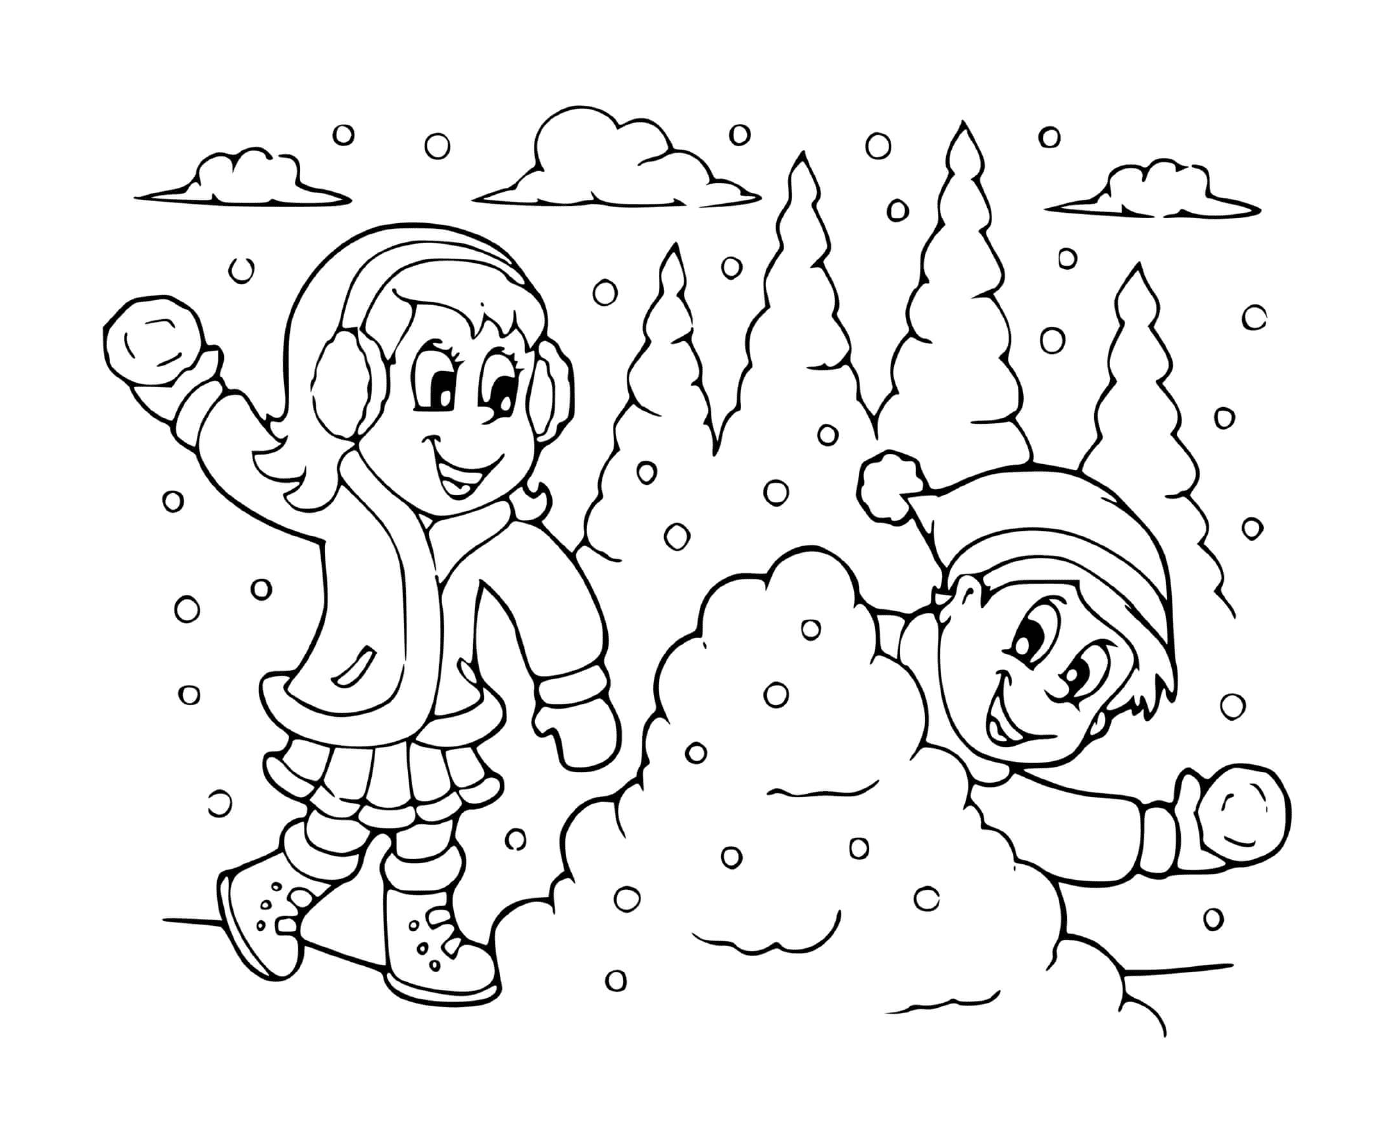  Batalla de nieve entre niña y niño 